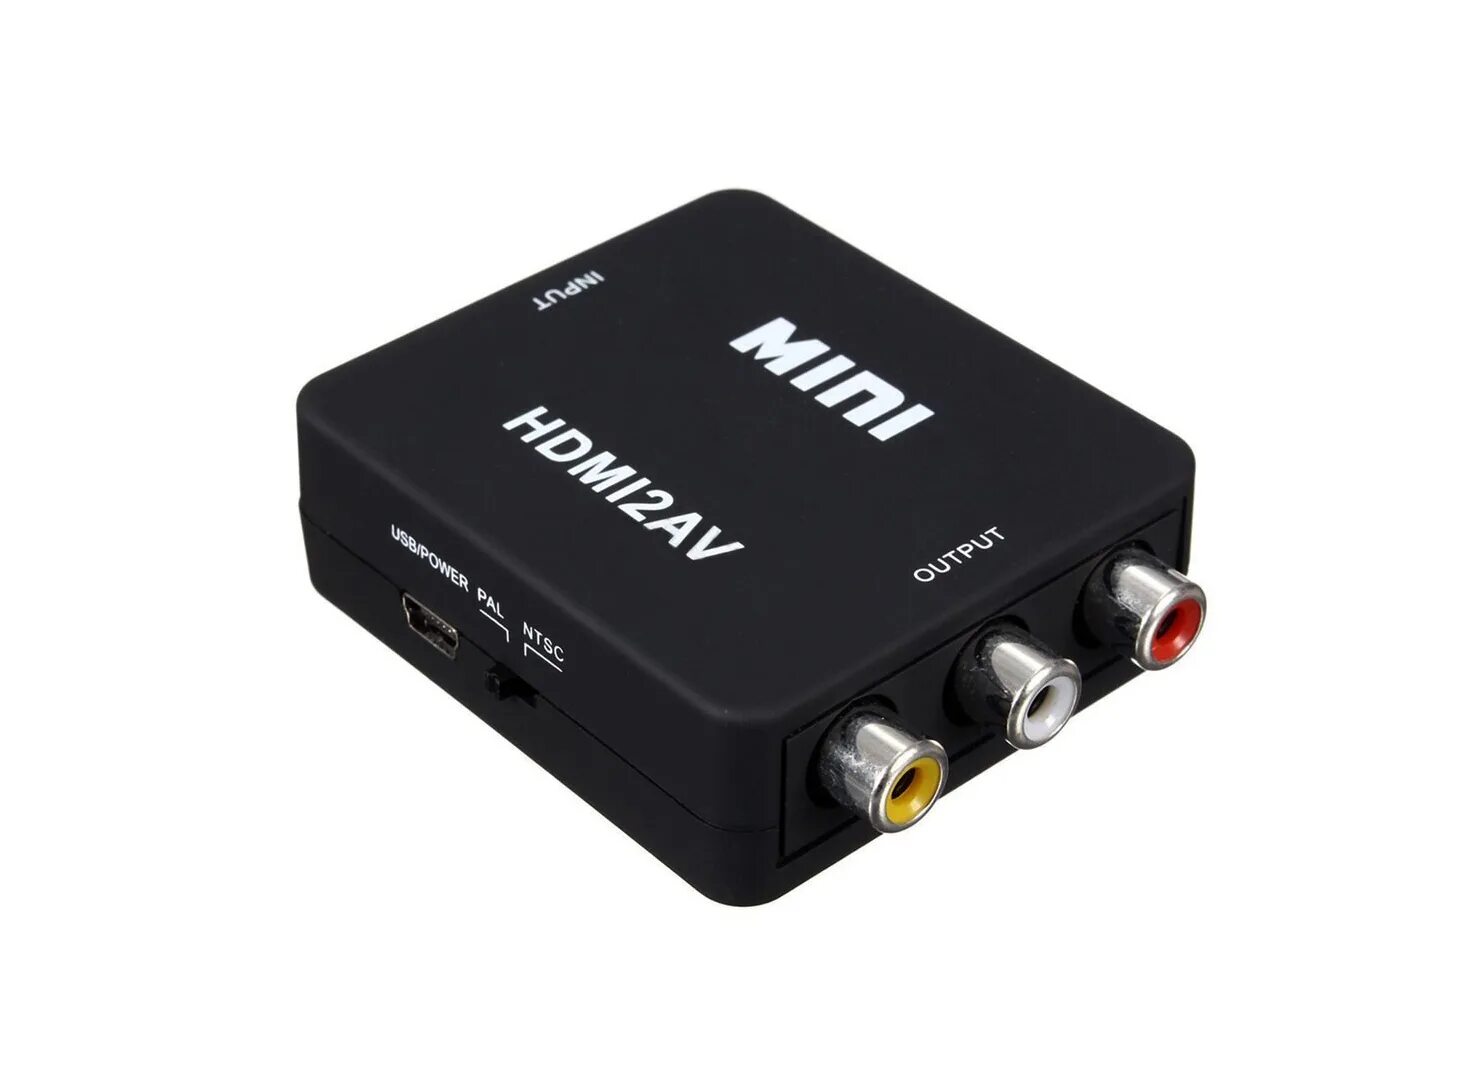 Av 2.0. Адаптер Mini av/HDMI 1080p Converter to 3 RCA (Black). HDMI to RCA av Converter hdmi2av. Адаптер переходник RCA (тюльпан) HDMI. Переходник HDMI to av (RCA).